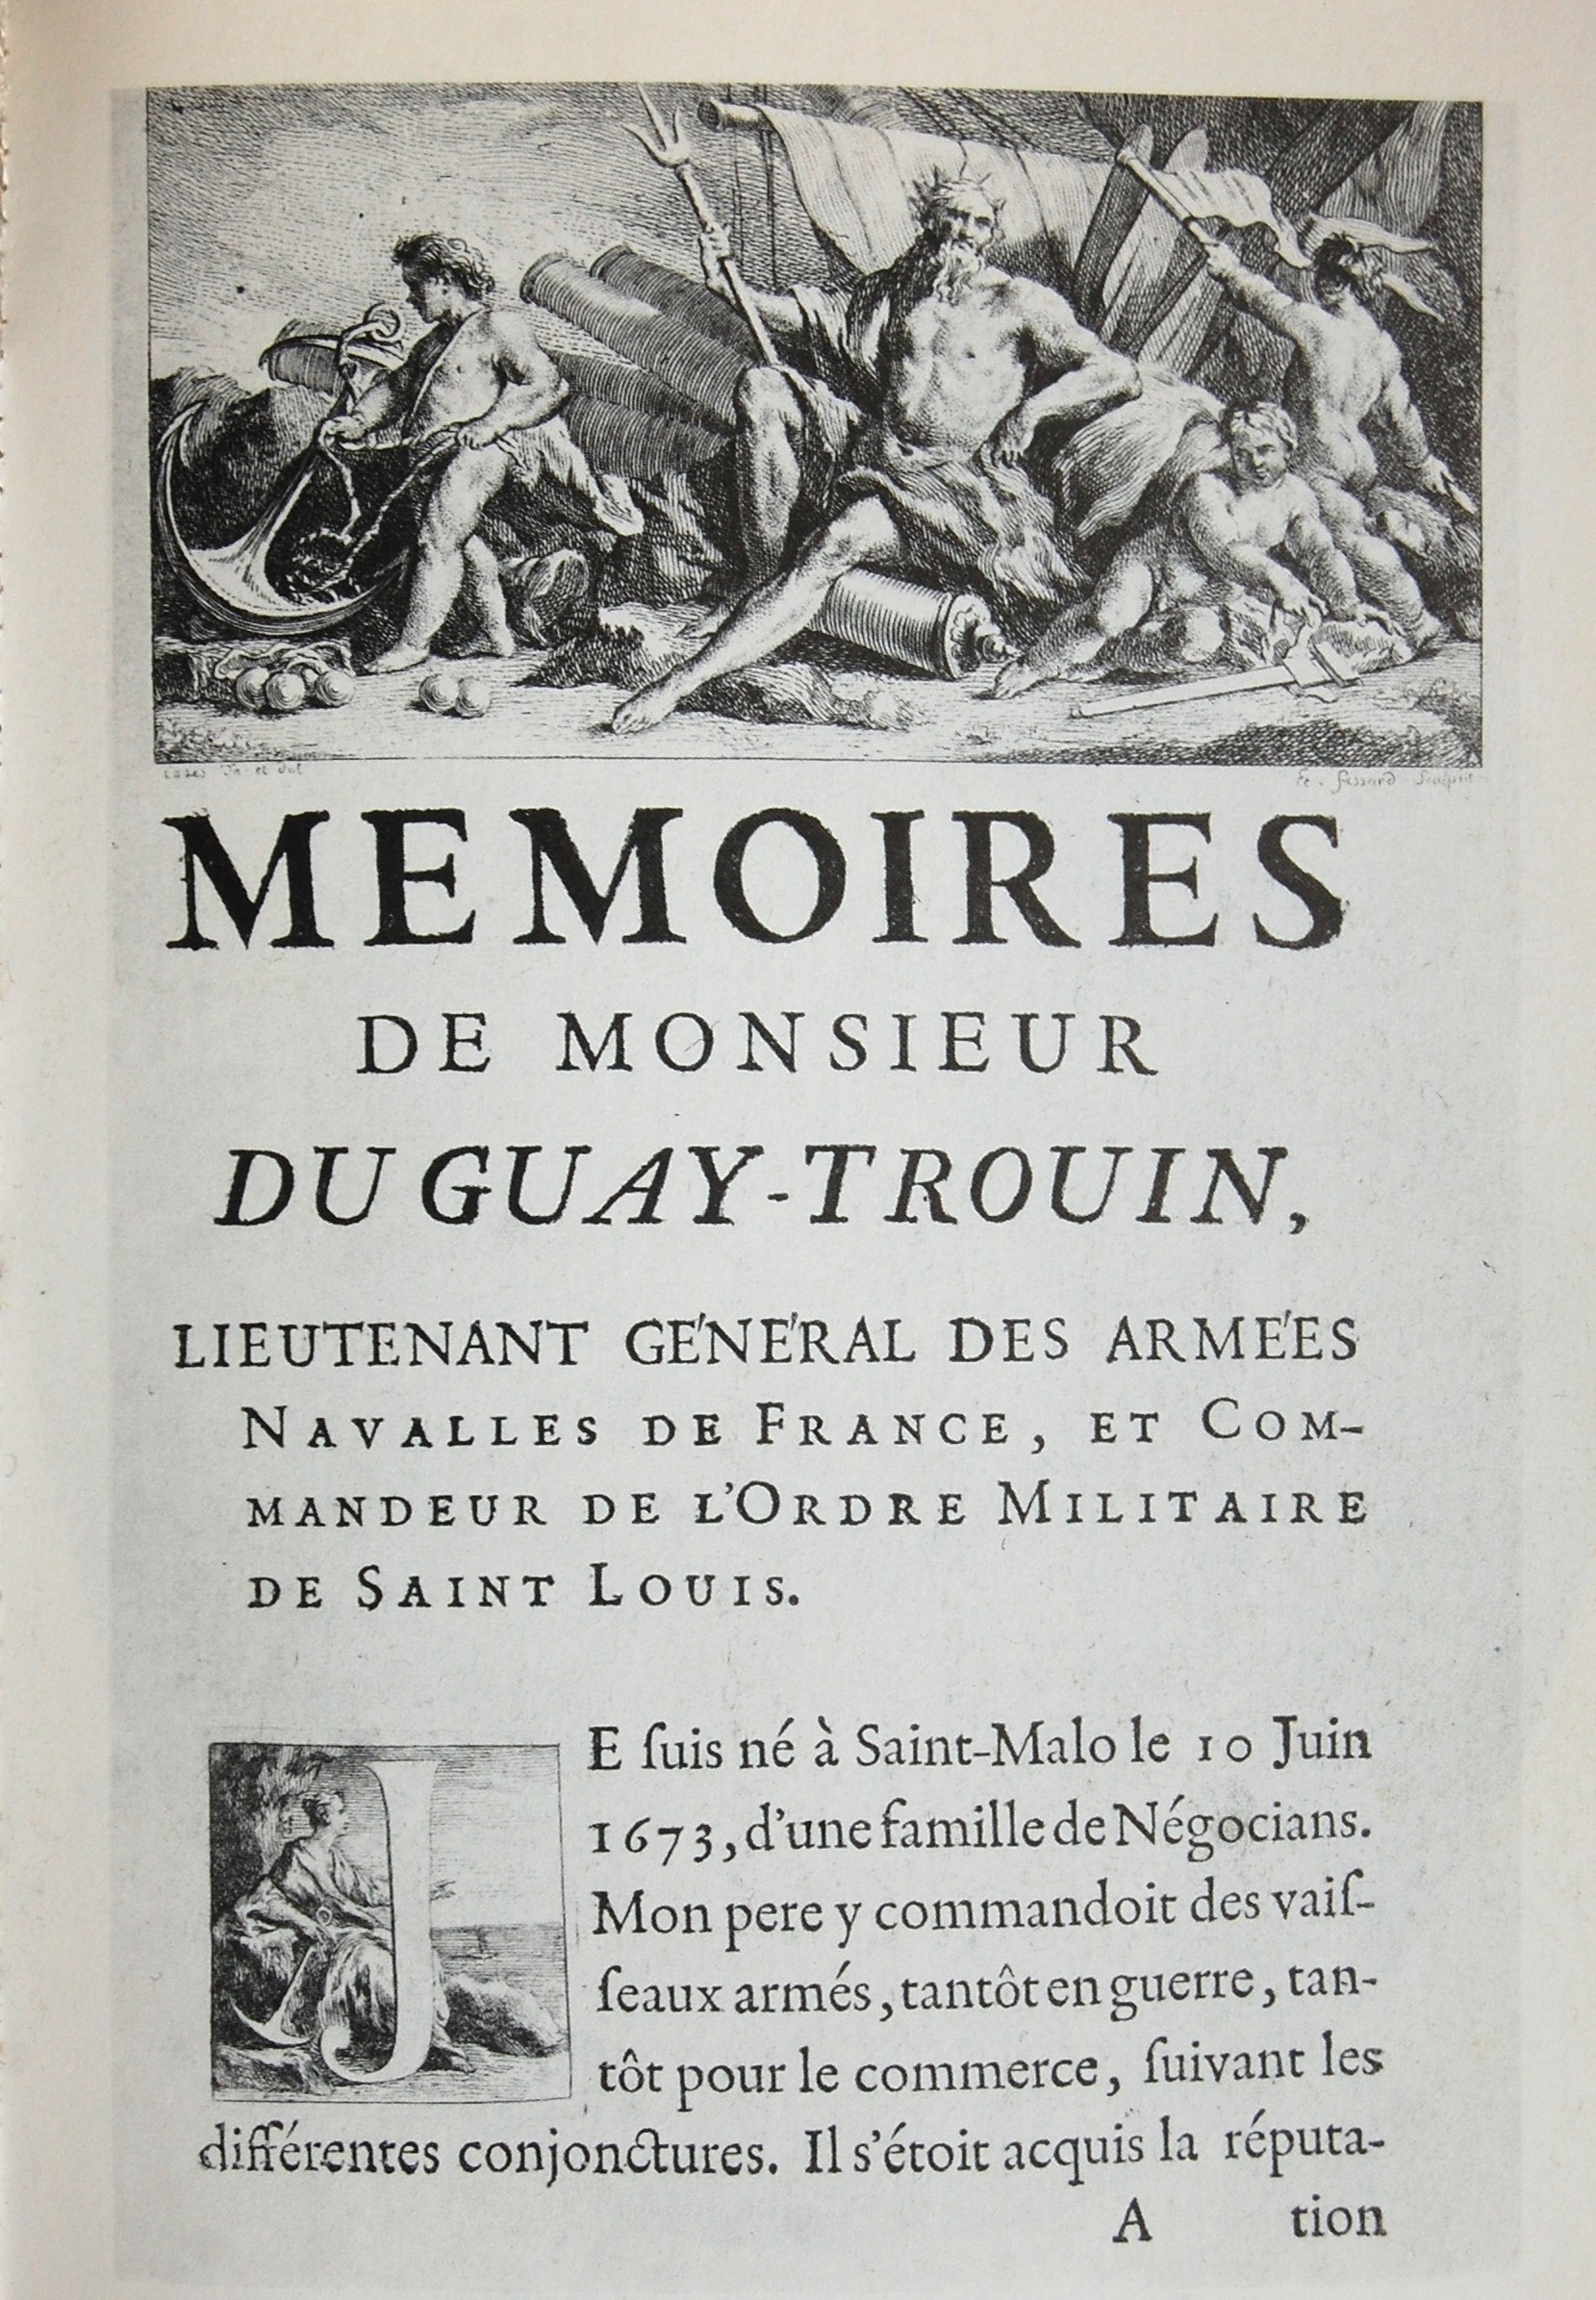 Couverture des Mémoires de Duguay Trouin